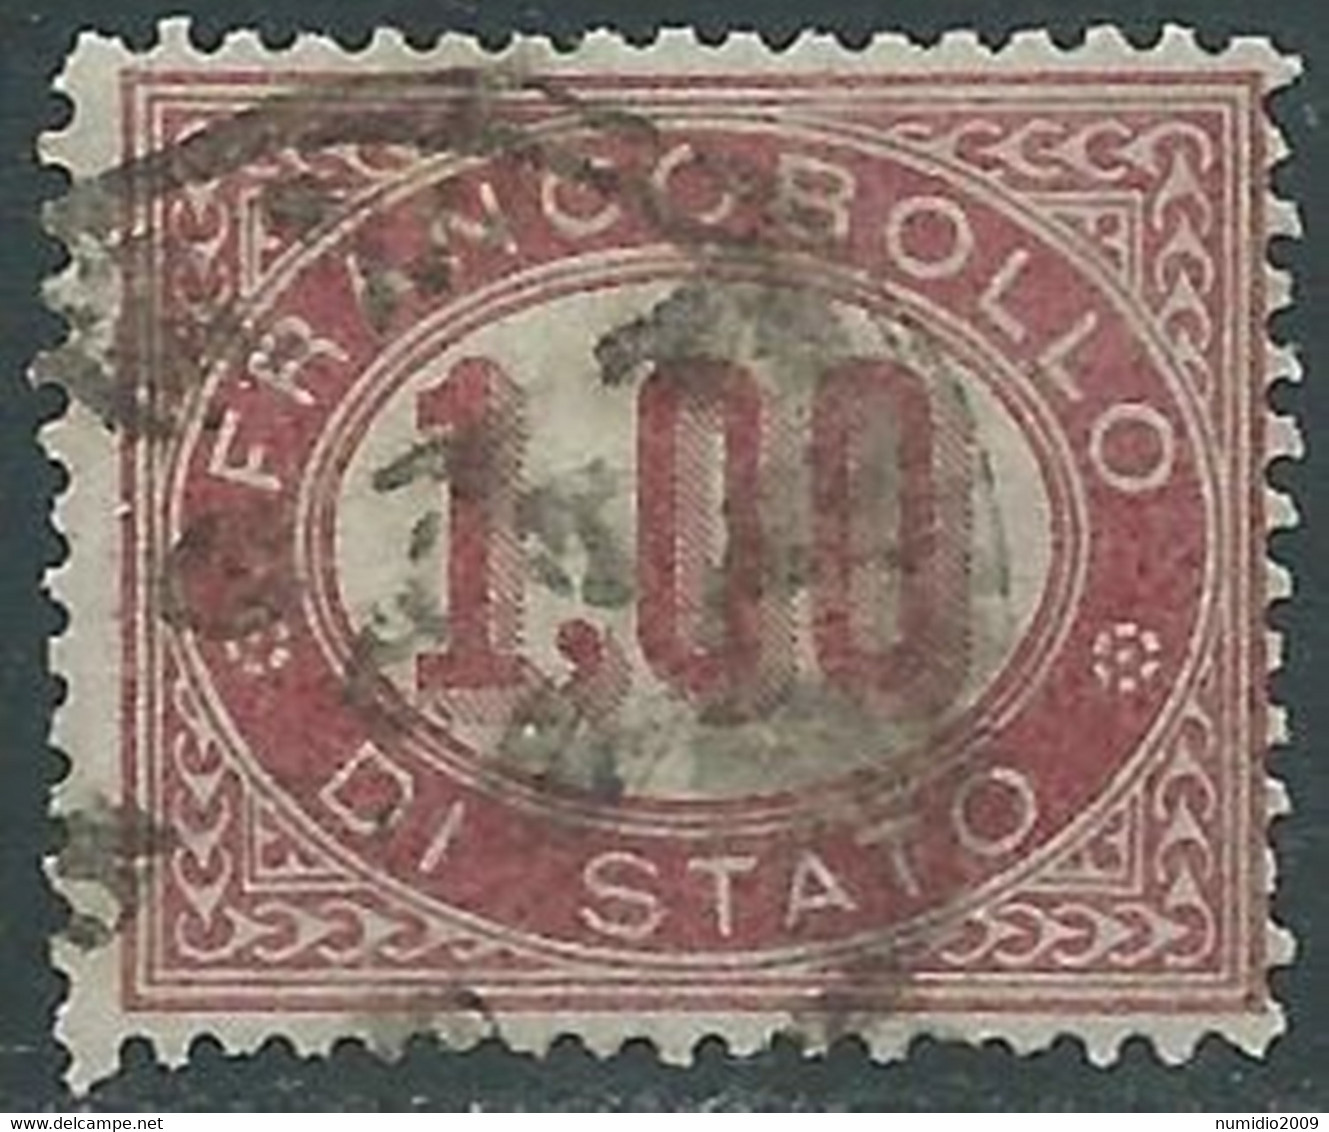 1875 REGNO SERVIZIO DI STATO USATO 1 LIRA - RE30-7 - Servizi